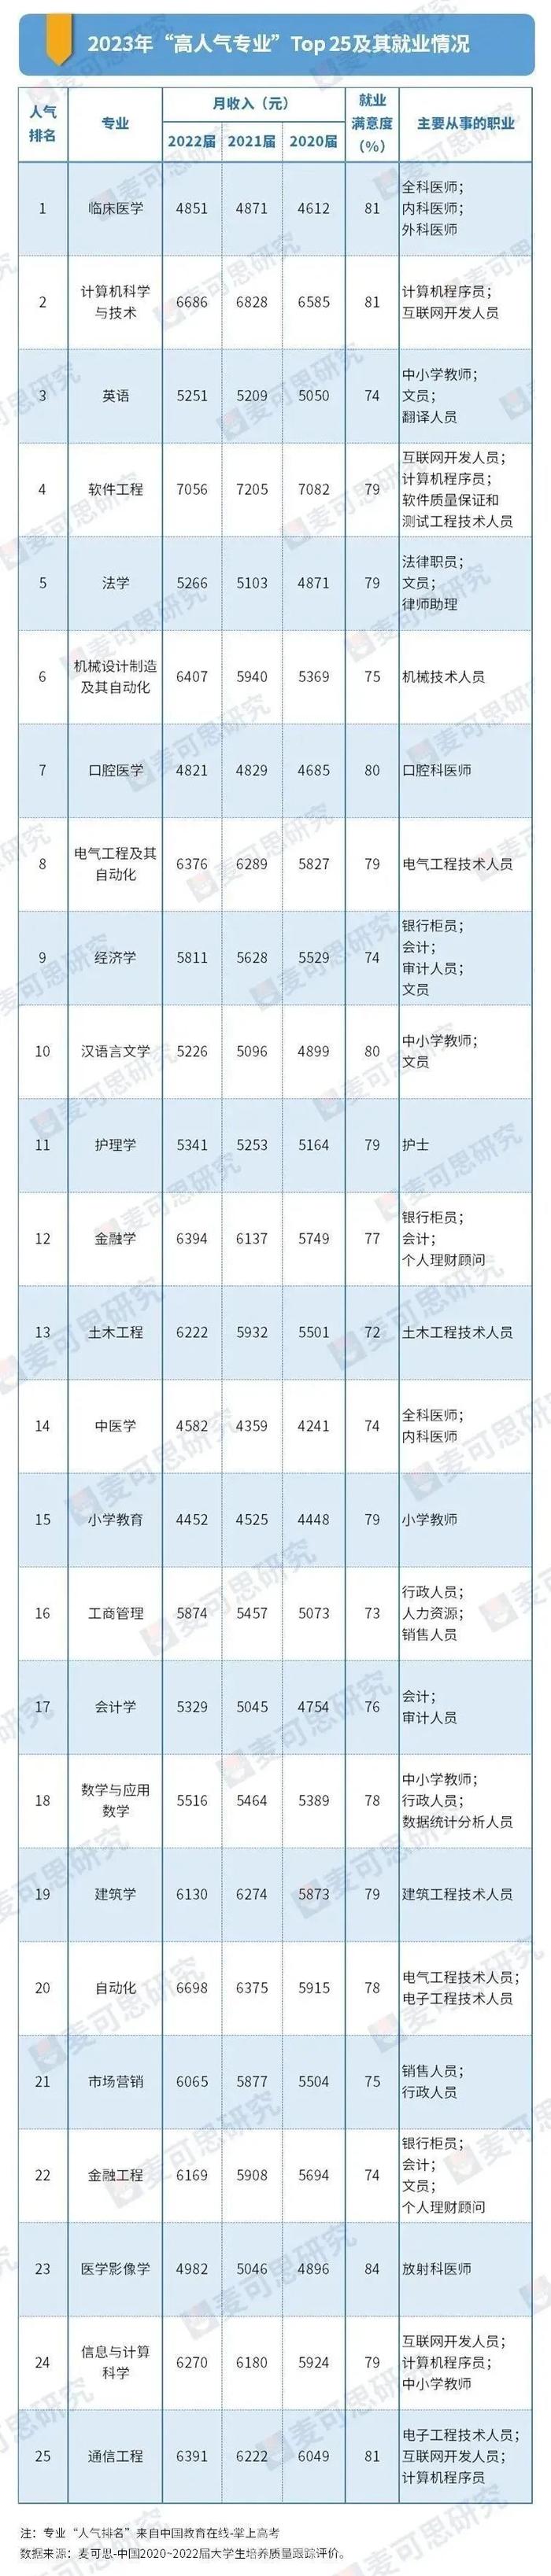 专业排行榜_重磅!2023中国大学专业排行榜公布!